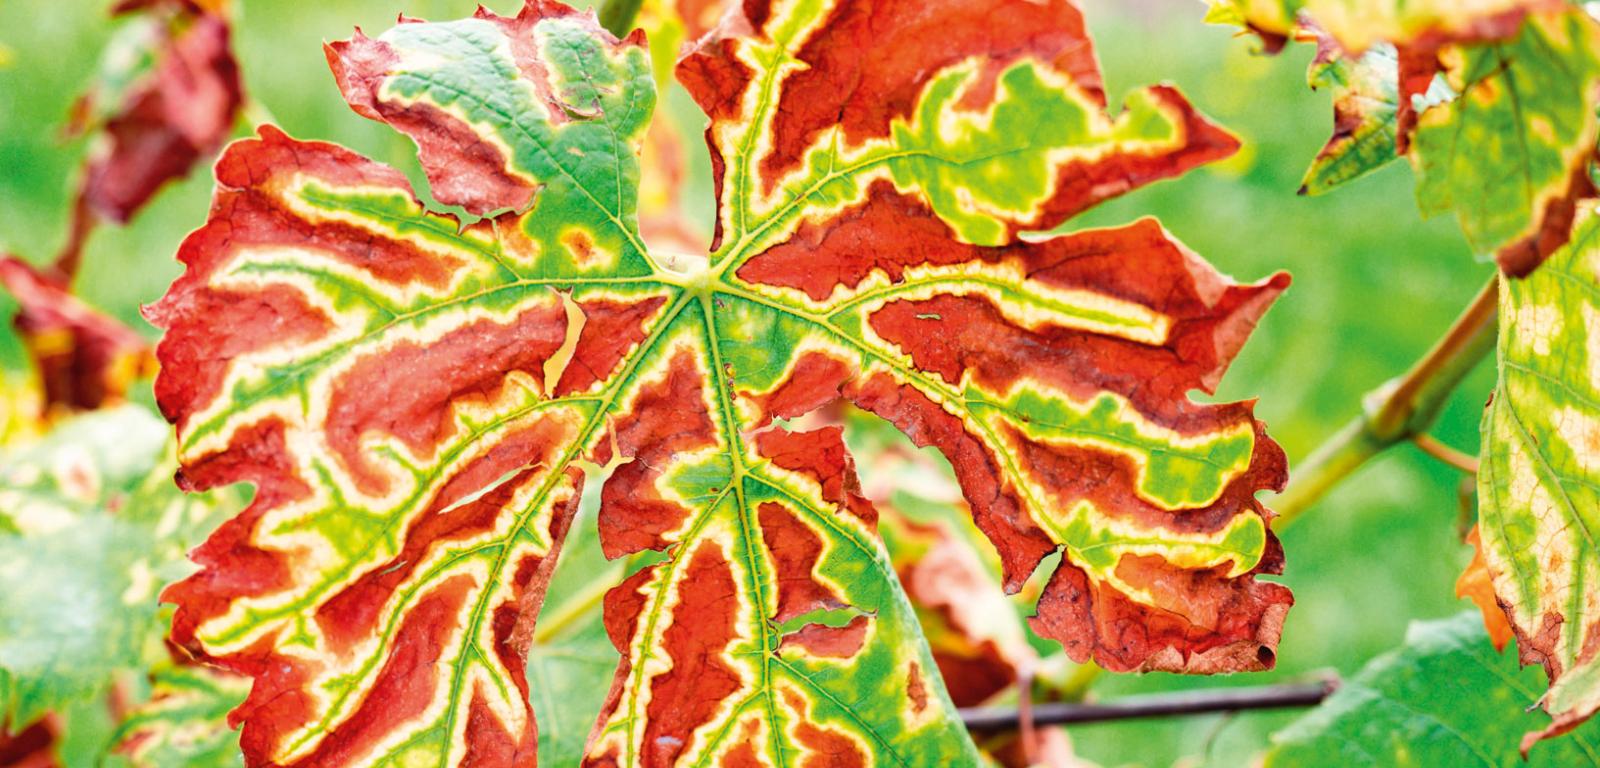 Stres wywołany infekcją zmienia wygląd rośliny (m.in. zabarwienie liści) oraz indukuje syntezę ochronnych fitoaleksyn.